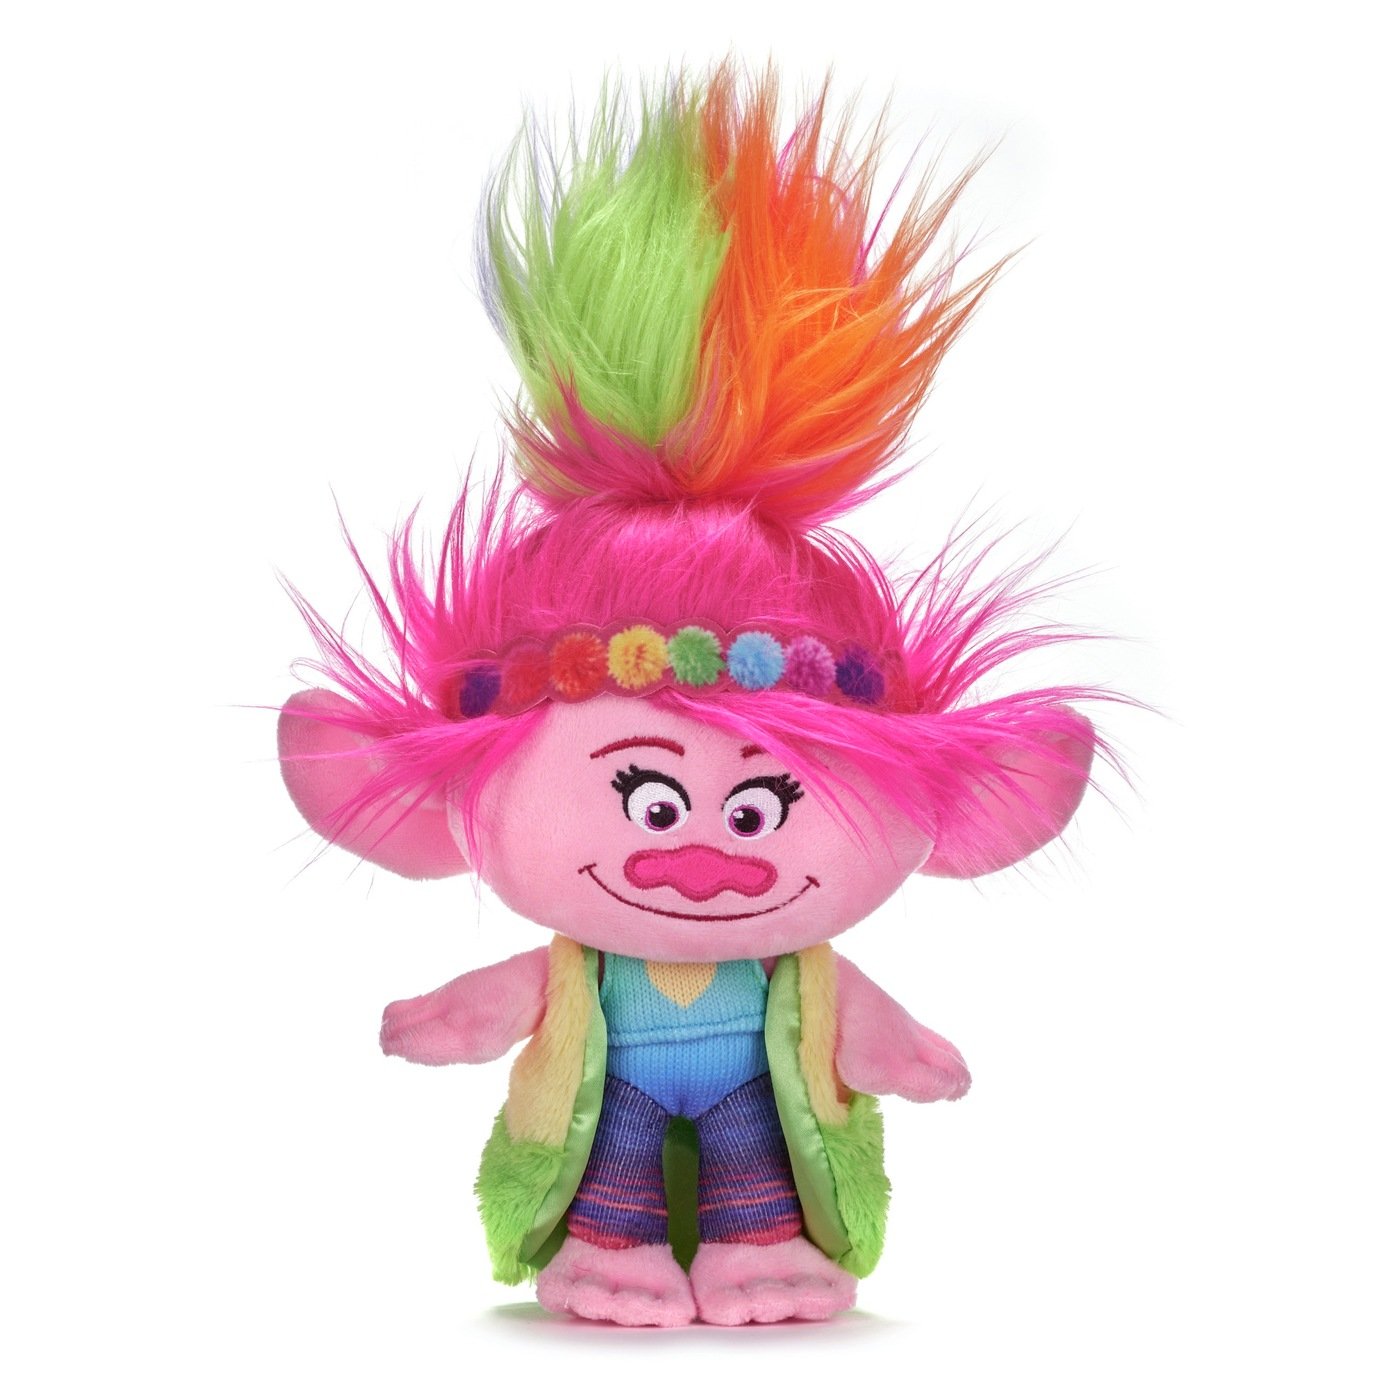 Trolls 2 10 Inch Rainbow Poppy Soft Toy Review